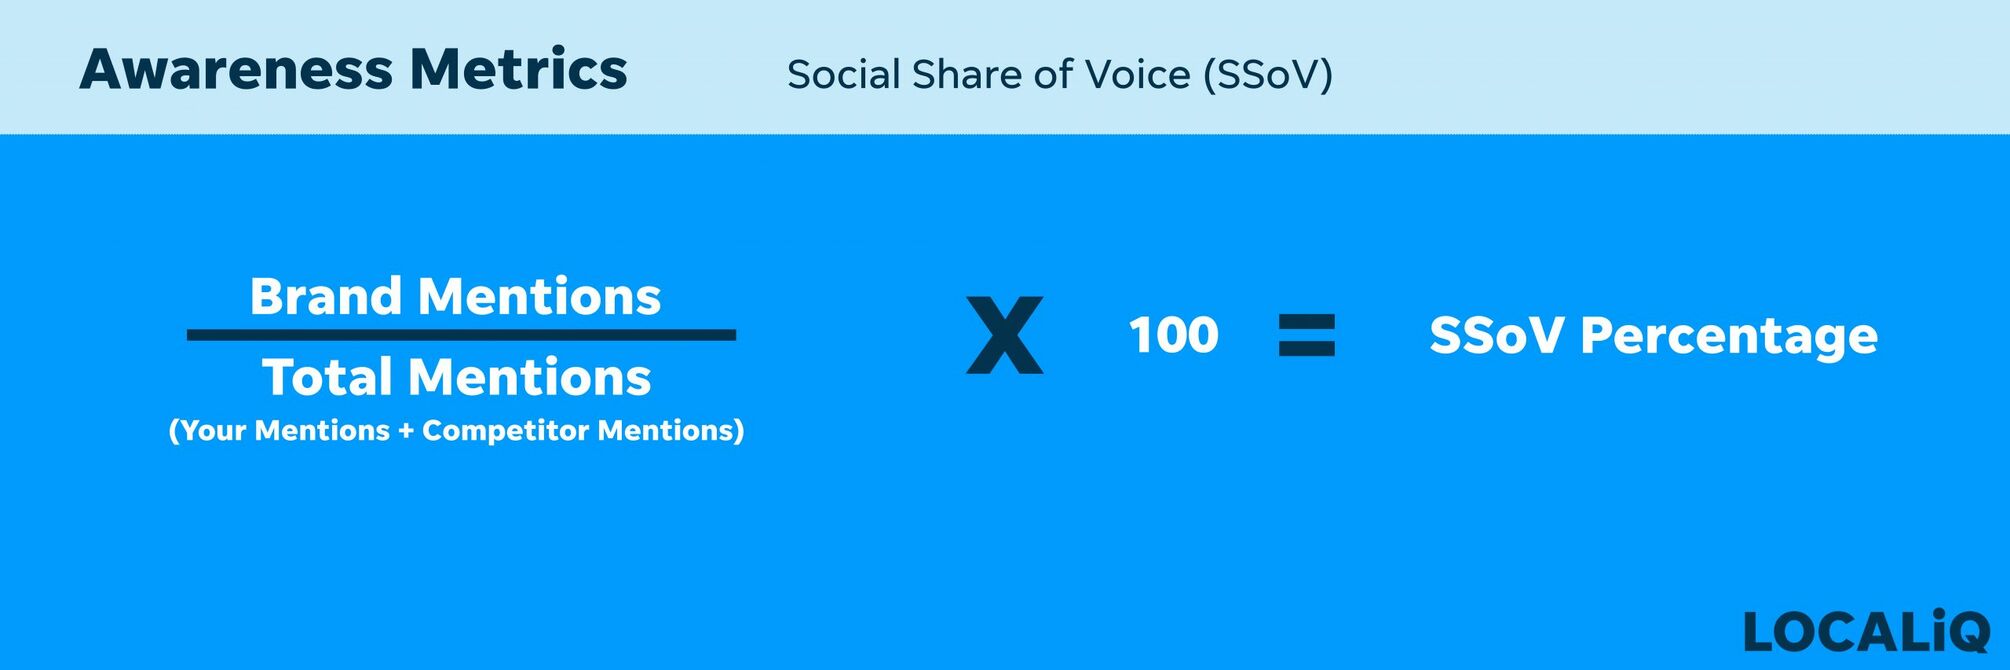 Awareness Metrics| Social Share of Voice (SSoV).